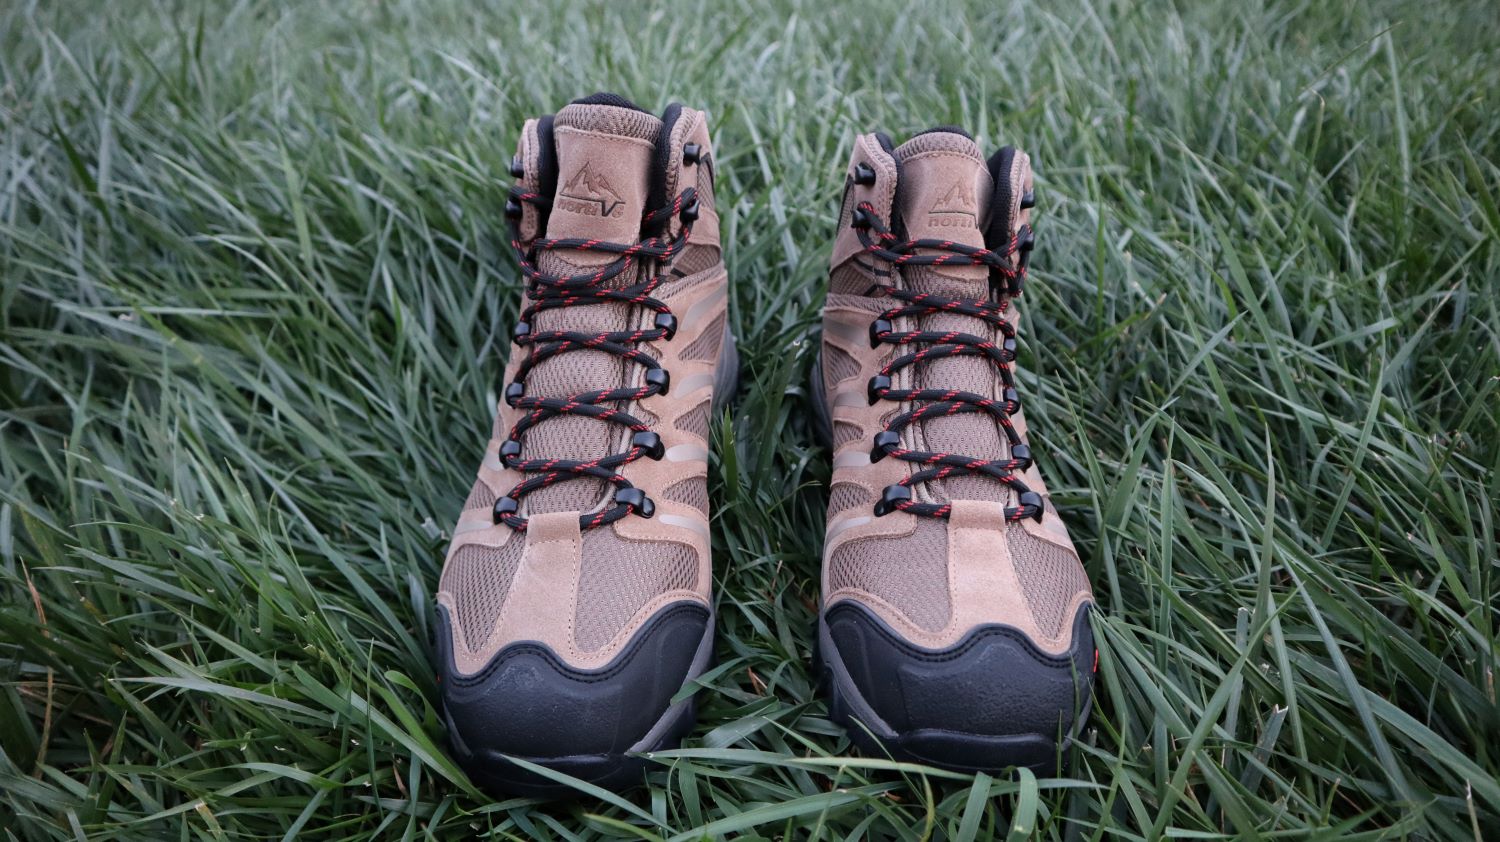 Nortiv8 Armadillo 2 Hiking Boots